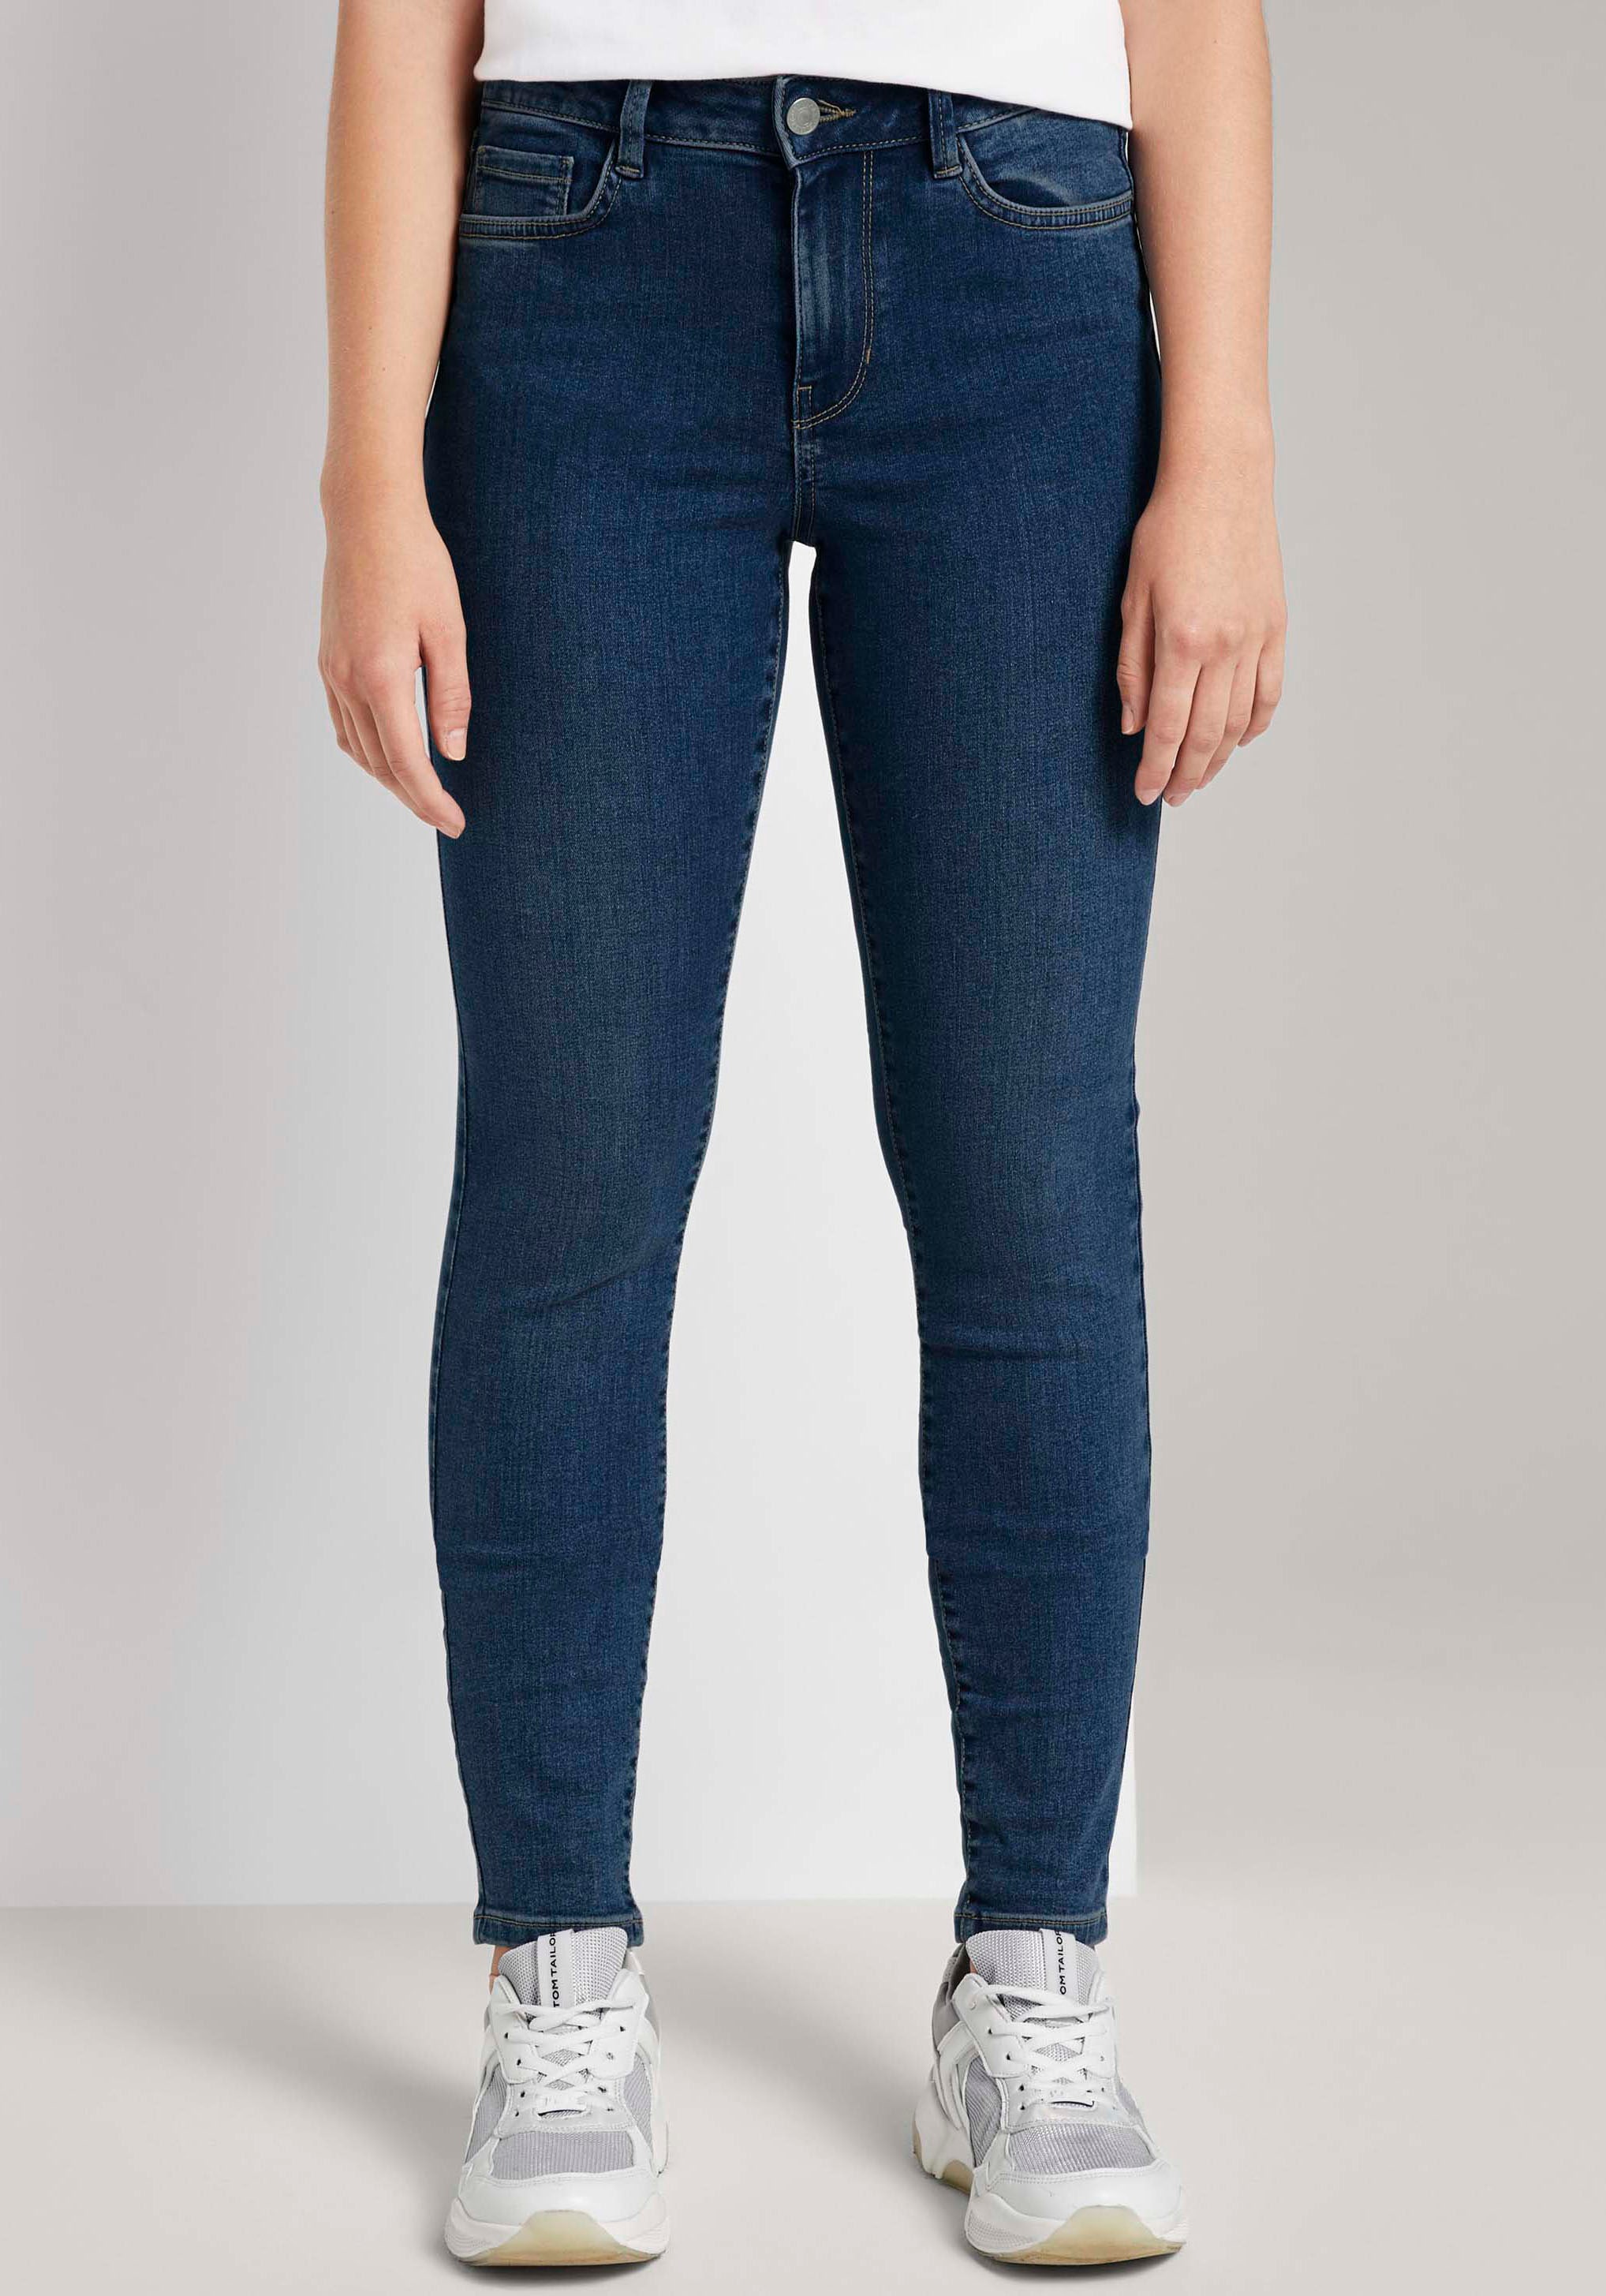 ♕ TOM kaufen im versandkostenfrei Denim Schnitt Slim-fit-Jeans, TAILOR 5-Pocket